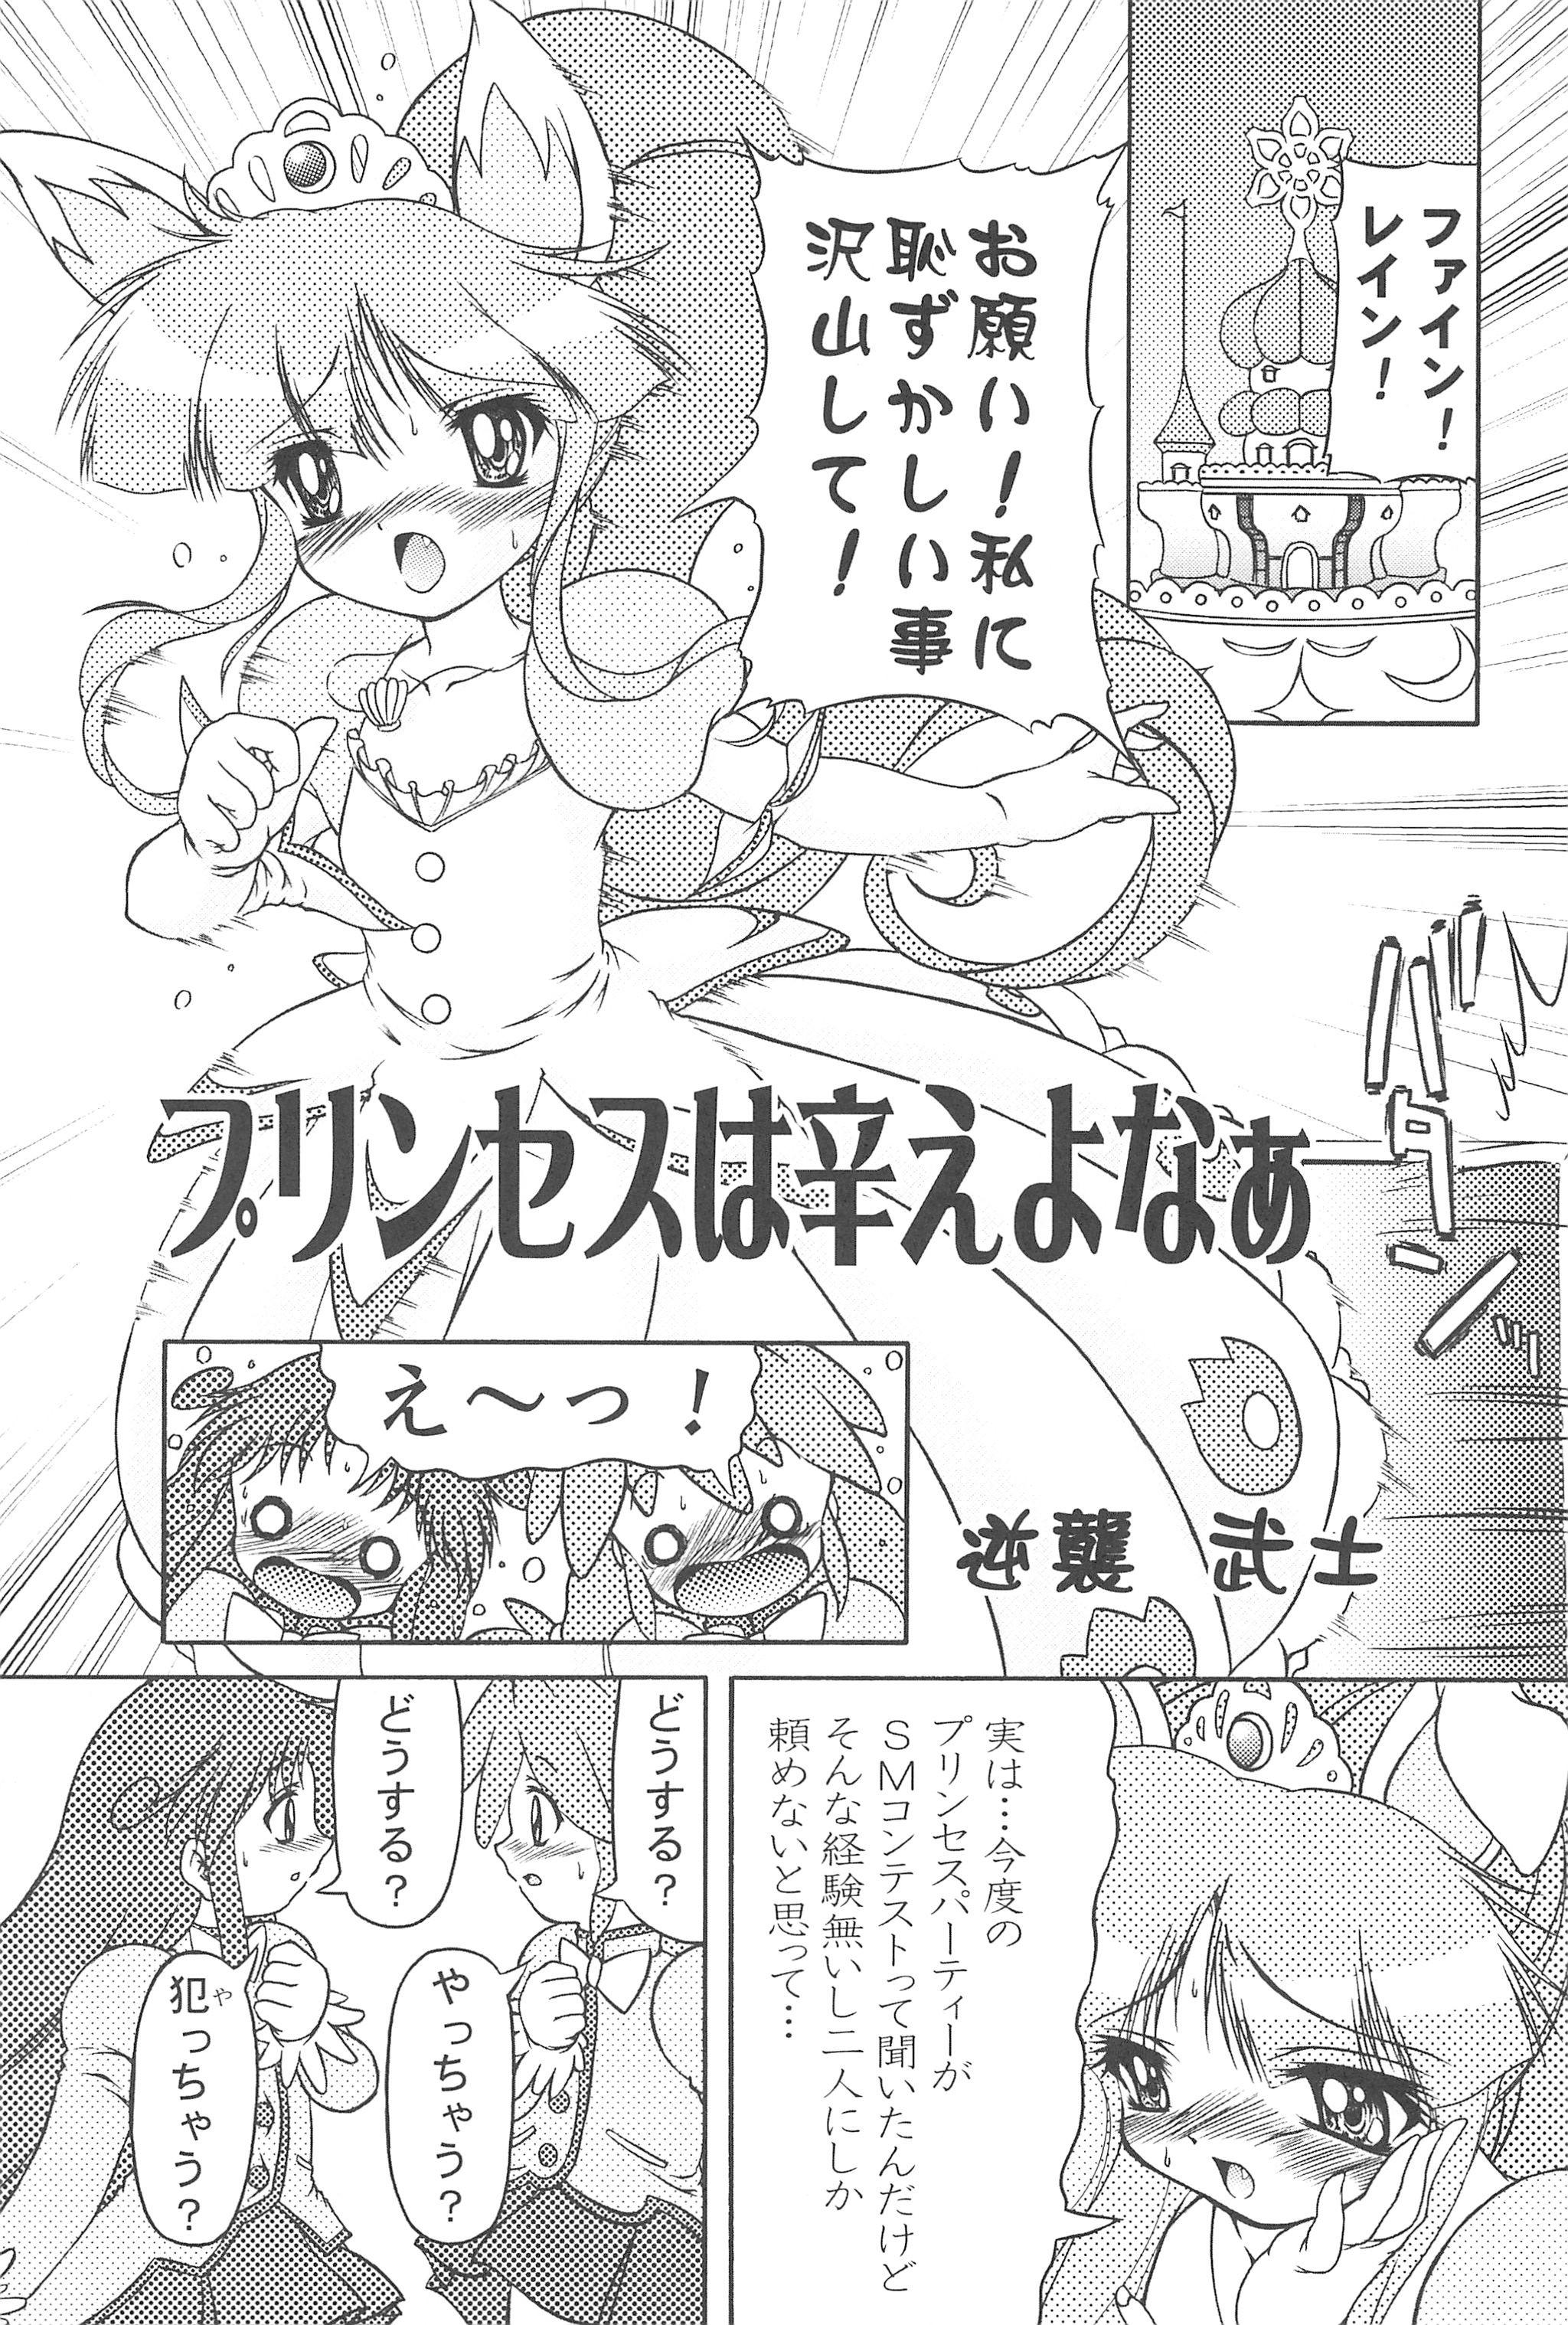 4some Mijuku!! Hanjuku!! Lori Lori Mori!! 6 - Fushigiboshi no futagohime Costume - Page 7